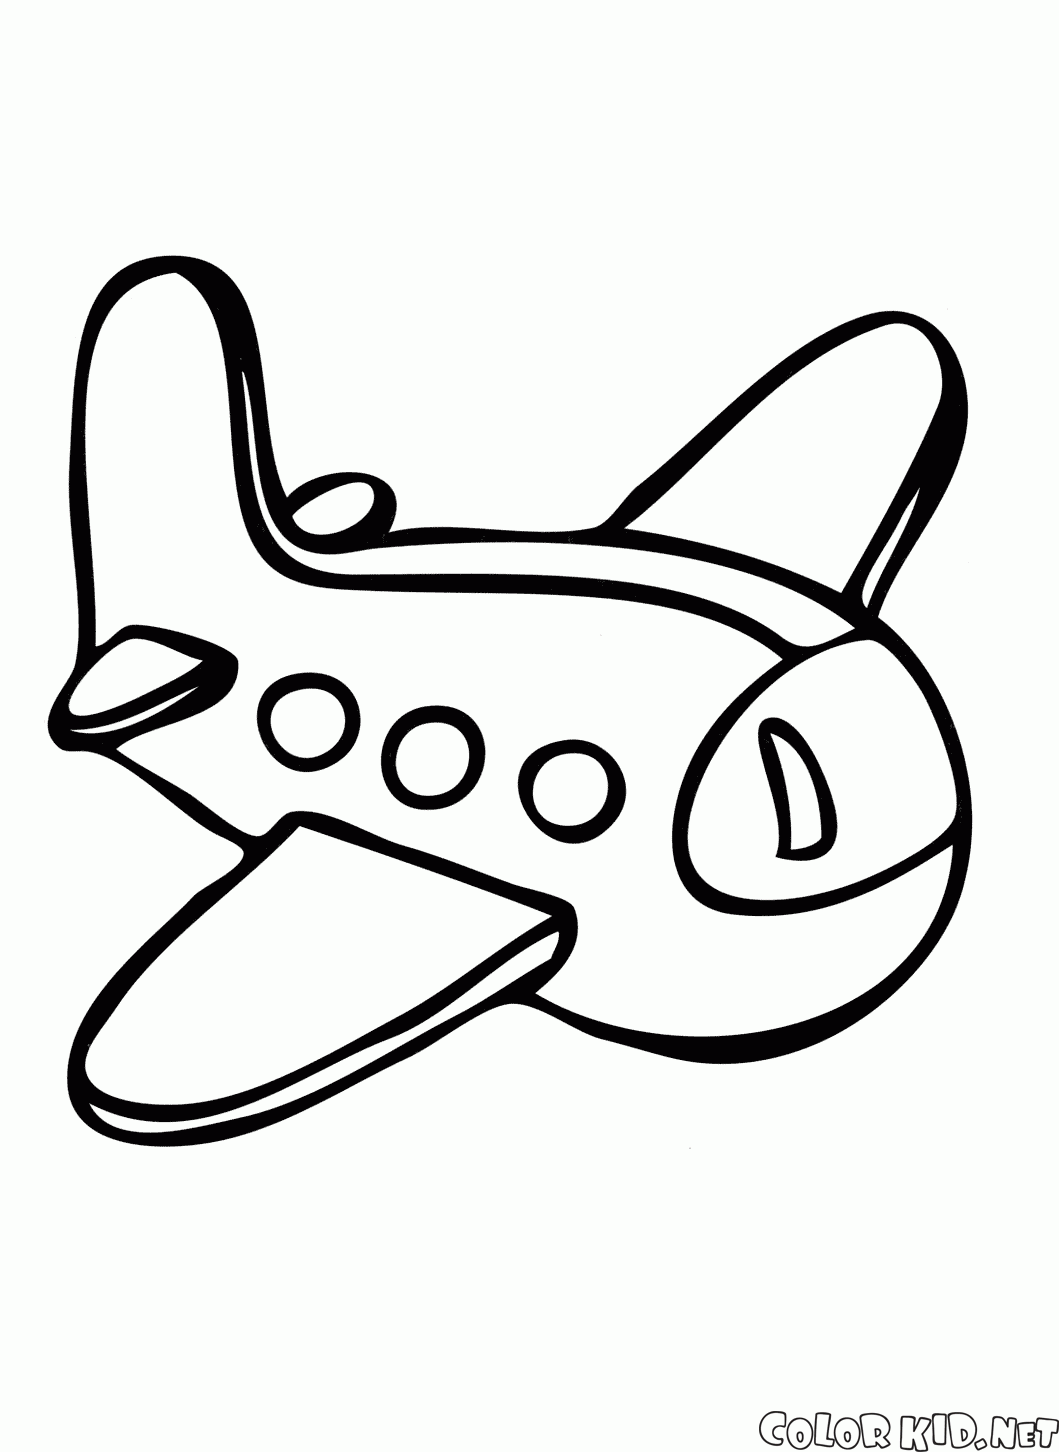 Avião de brinquedo